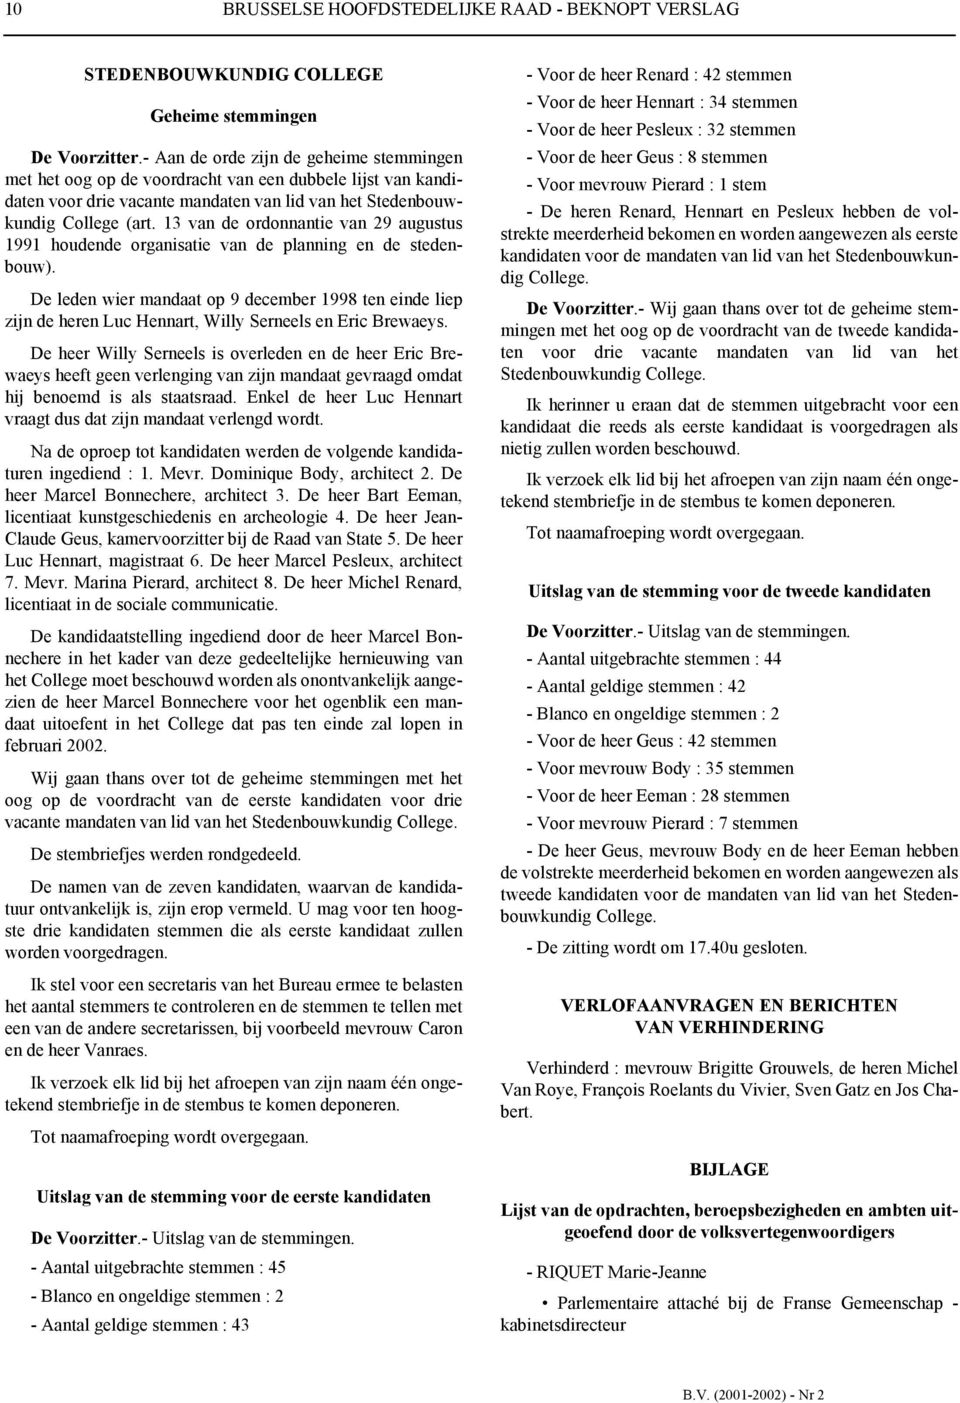 13 van de ordonnantie van 29 augustus 1991 houdende organisatie van de planning en de stedenbouw).